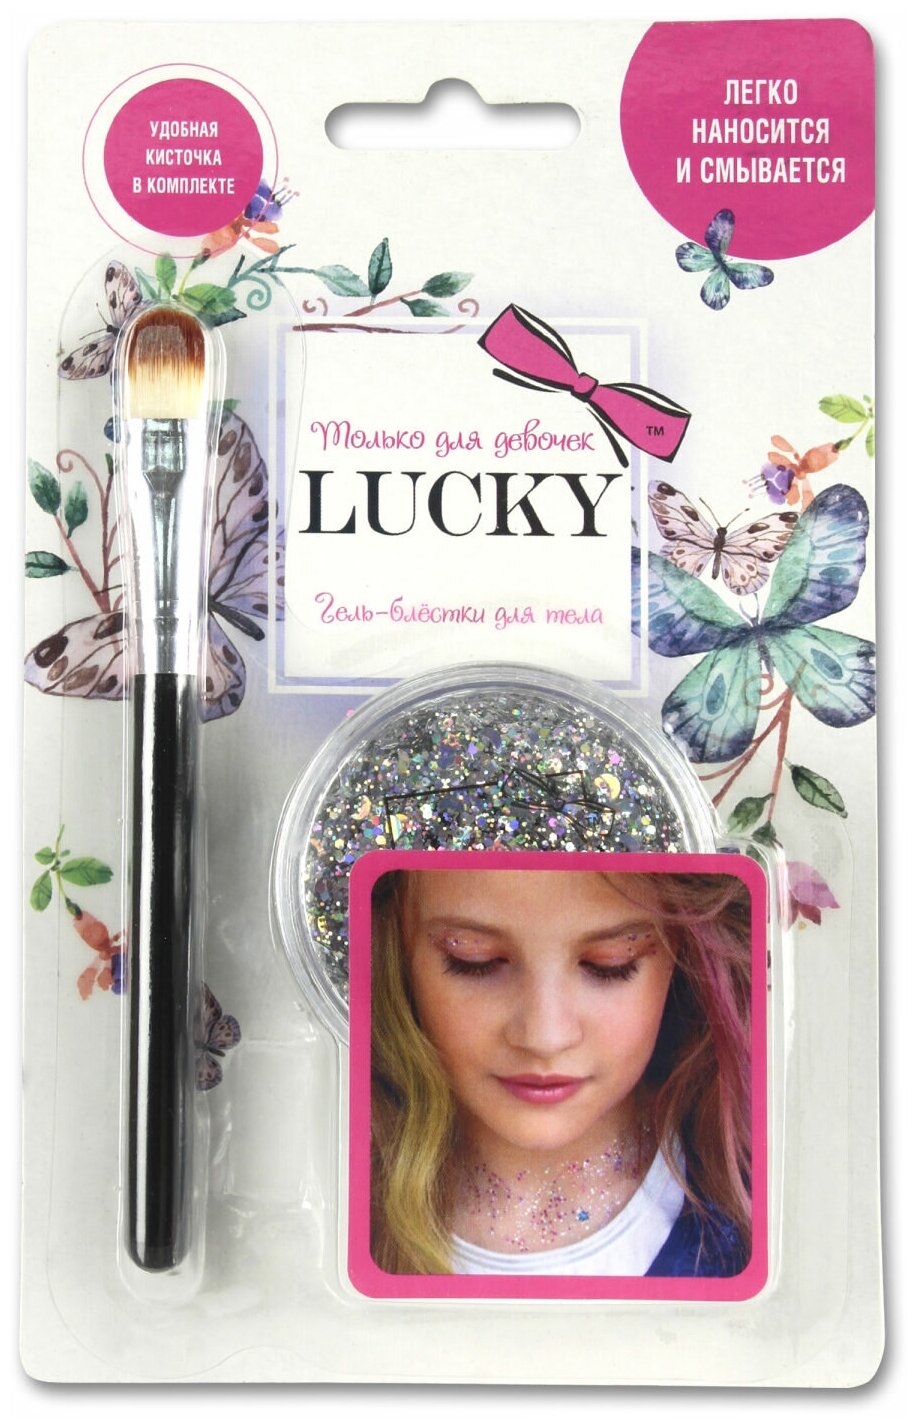 Гель-блестки Lucky для тела и лица, с кисточкой, цвет: серебро (Т11926)